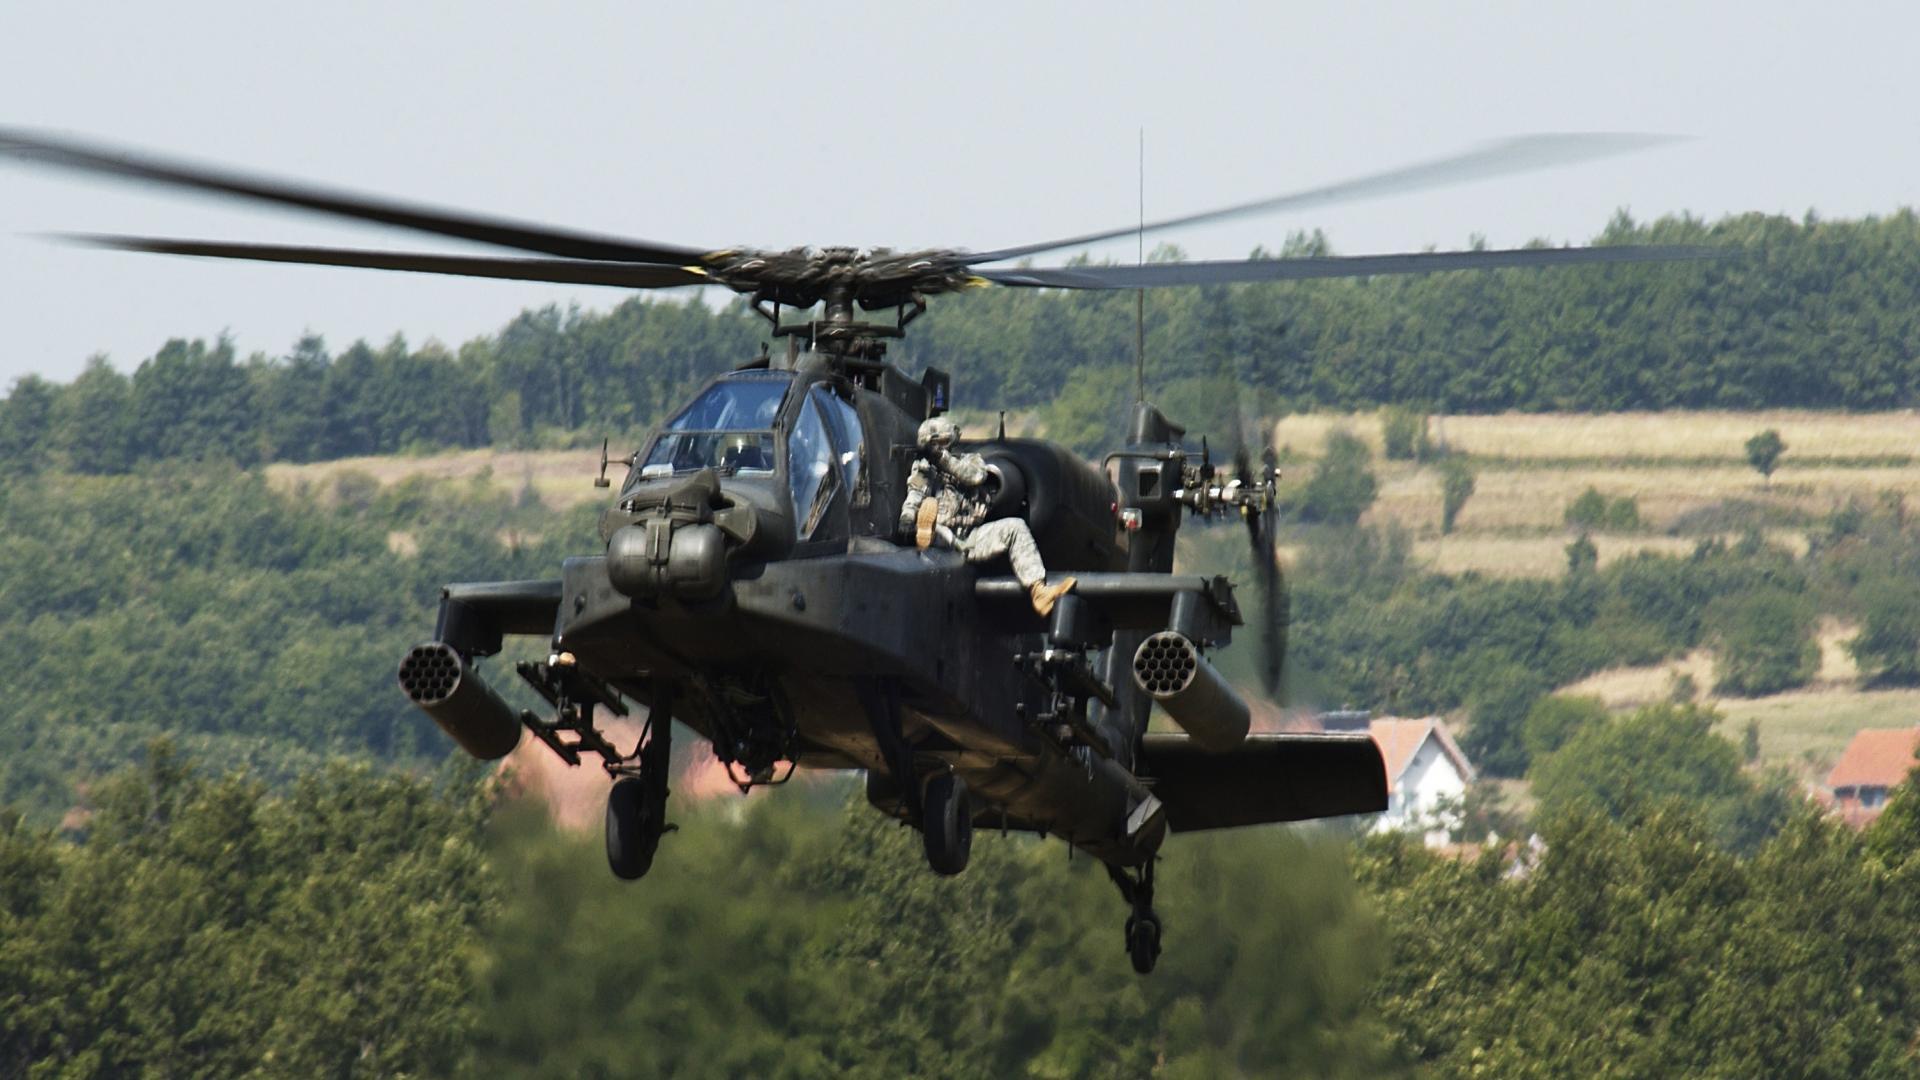 1920x1080 Ah 64d Apache hình nền máy bay trực thăng quân đội